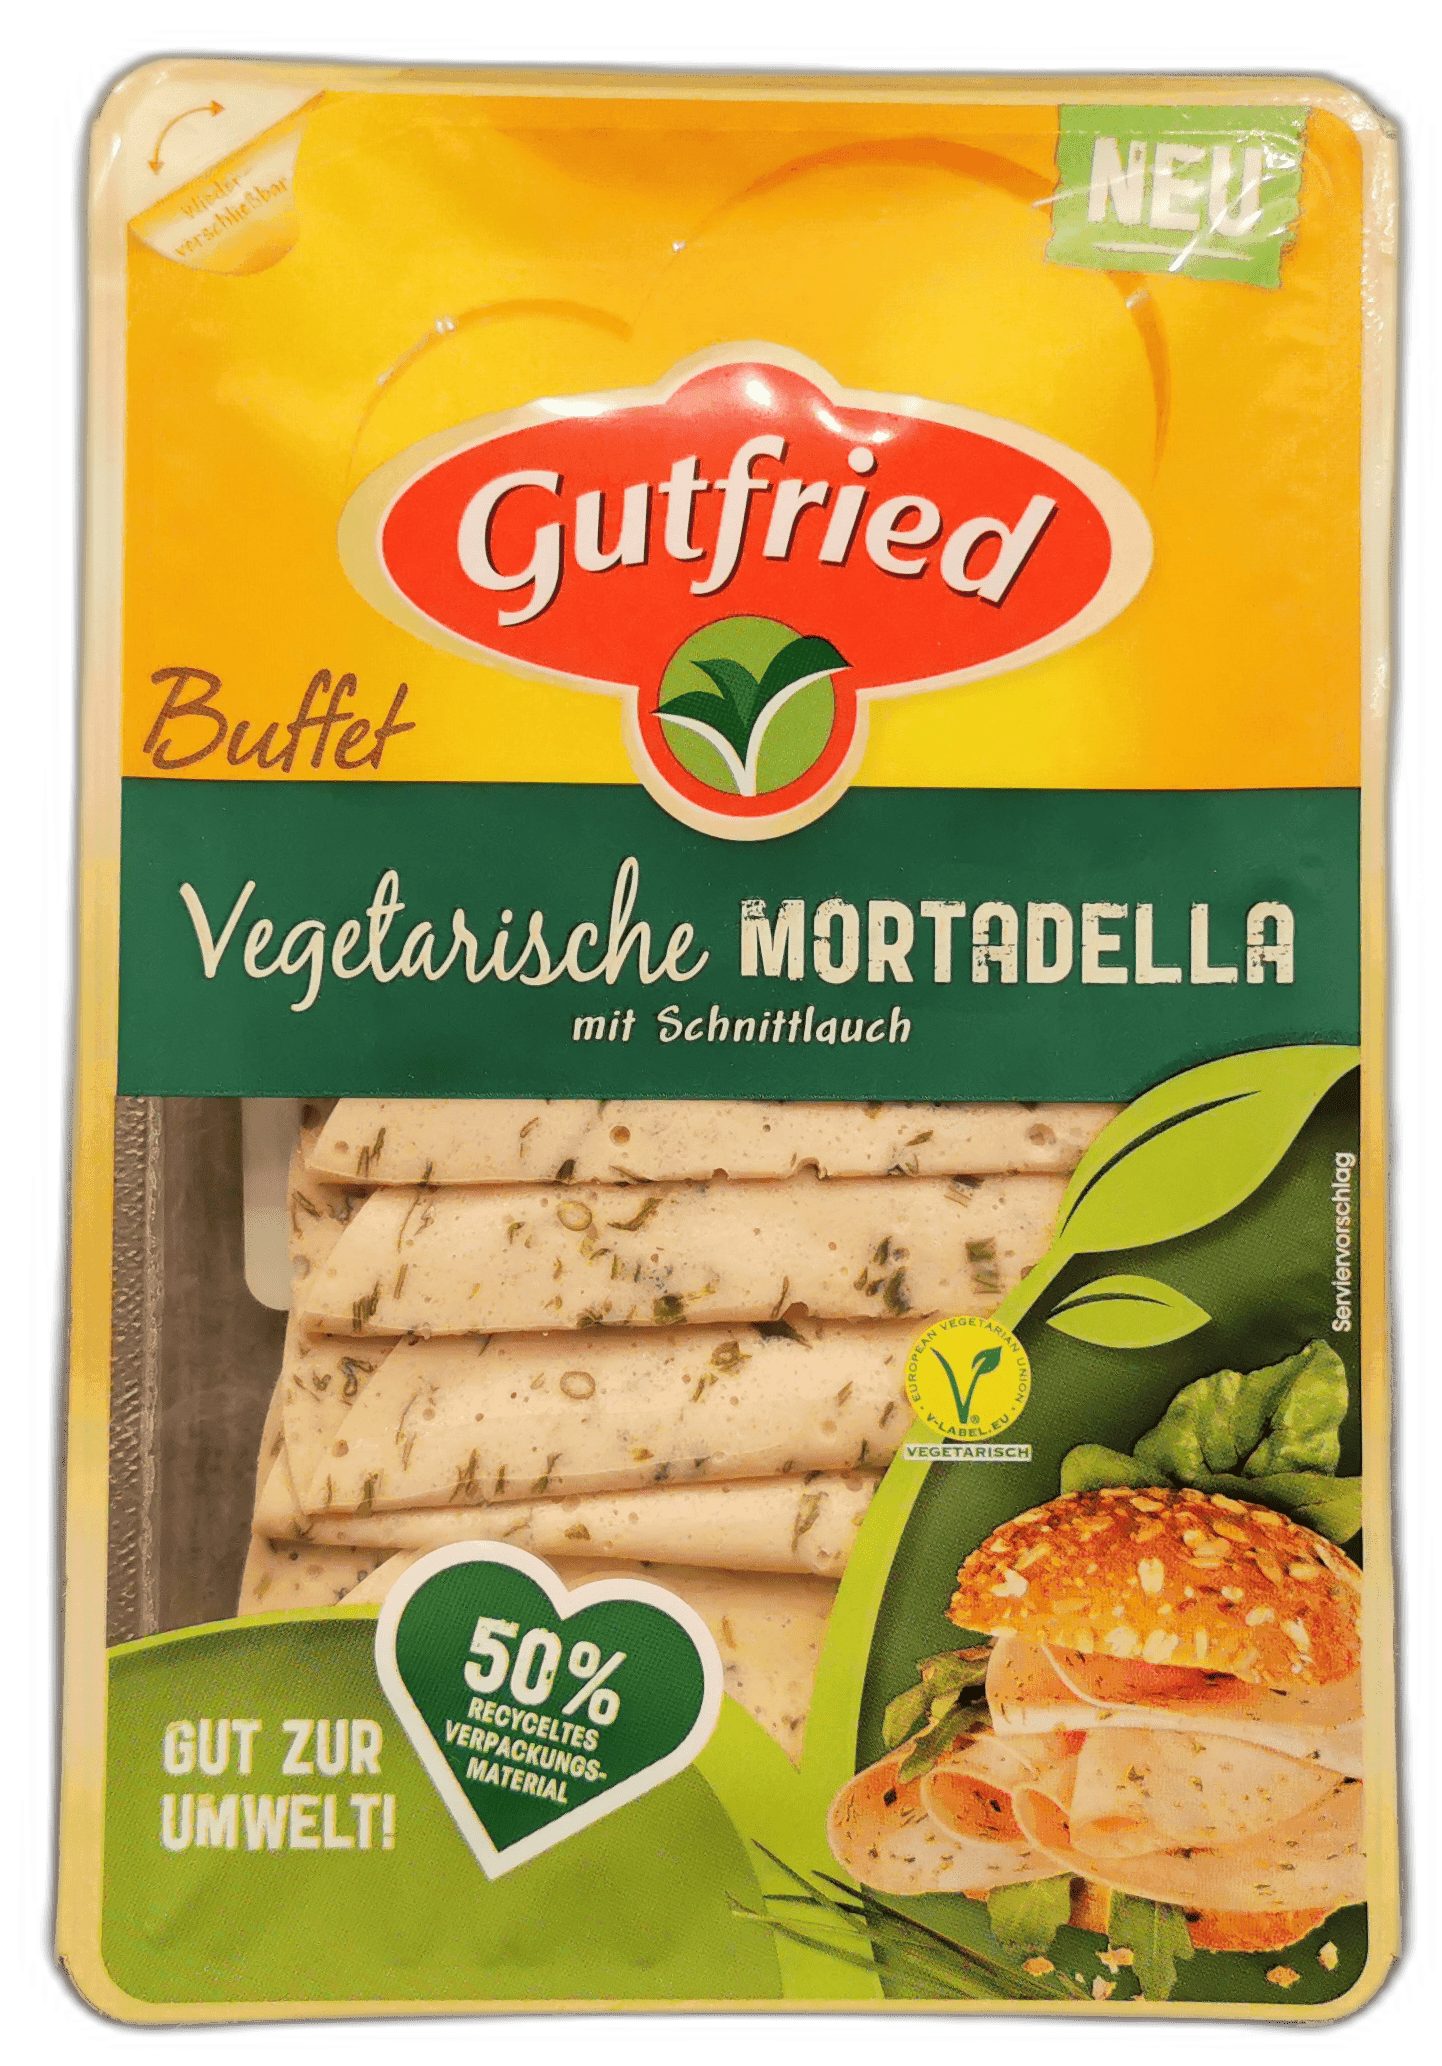 Gutfried: Vegetarische Mortadella mit Schnittlauch